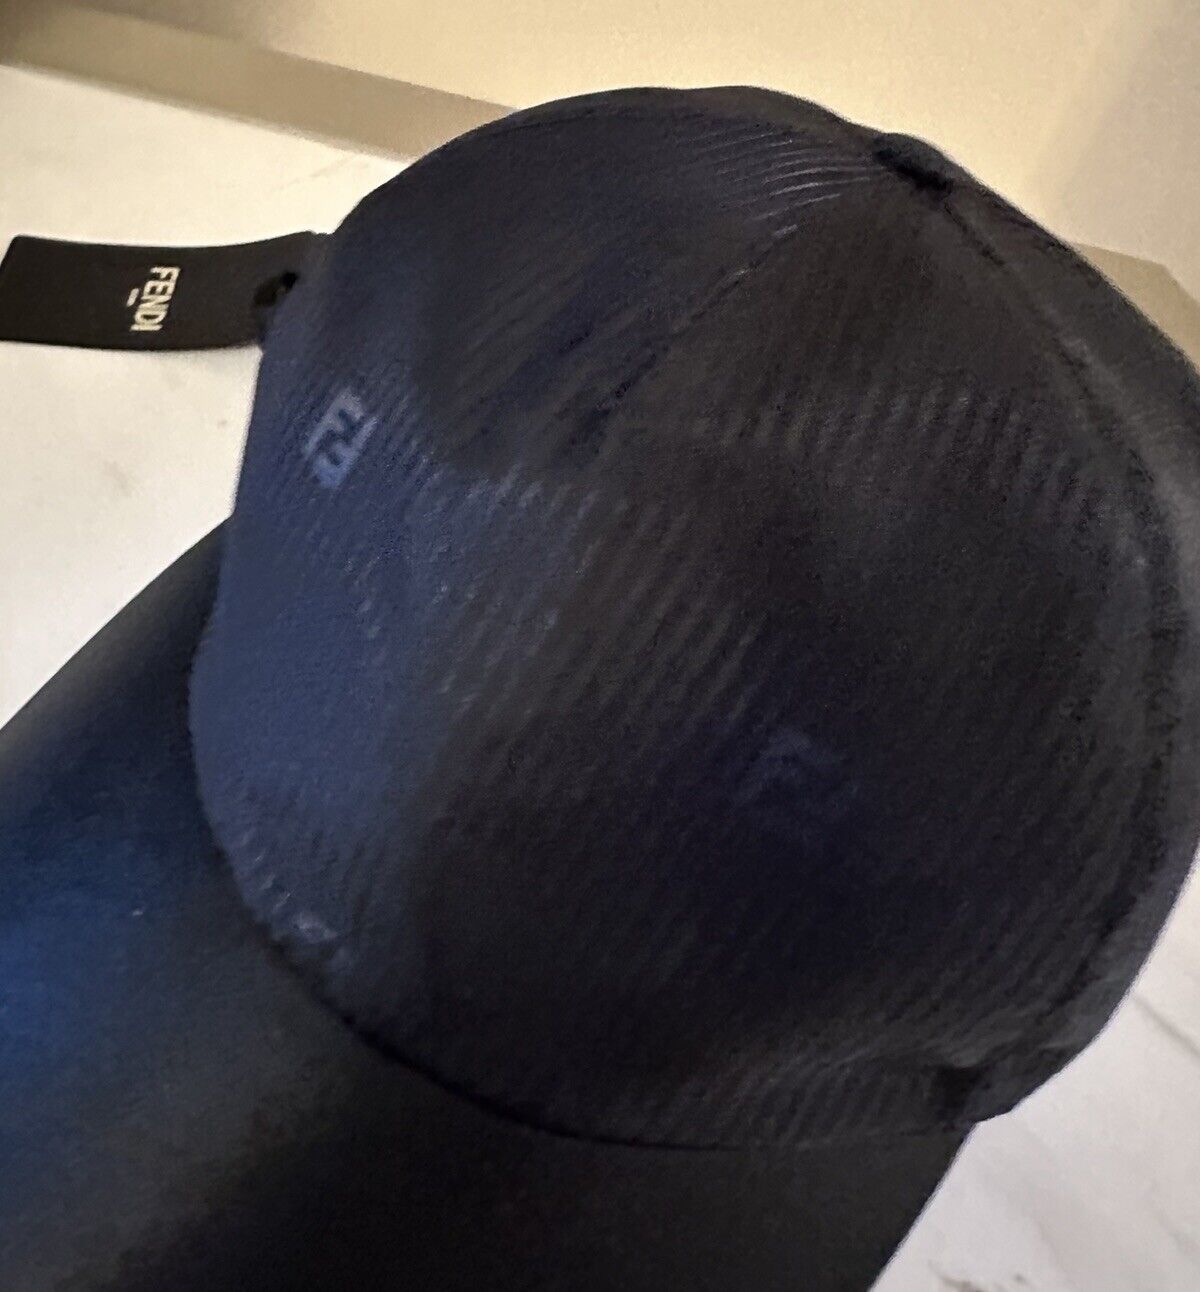 NWT $770 Fendi Logo Leather/Nylon Baseball Cap Hat Black/Navy One Size Italy